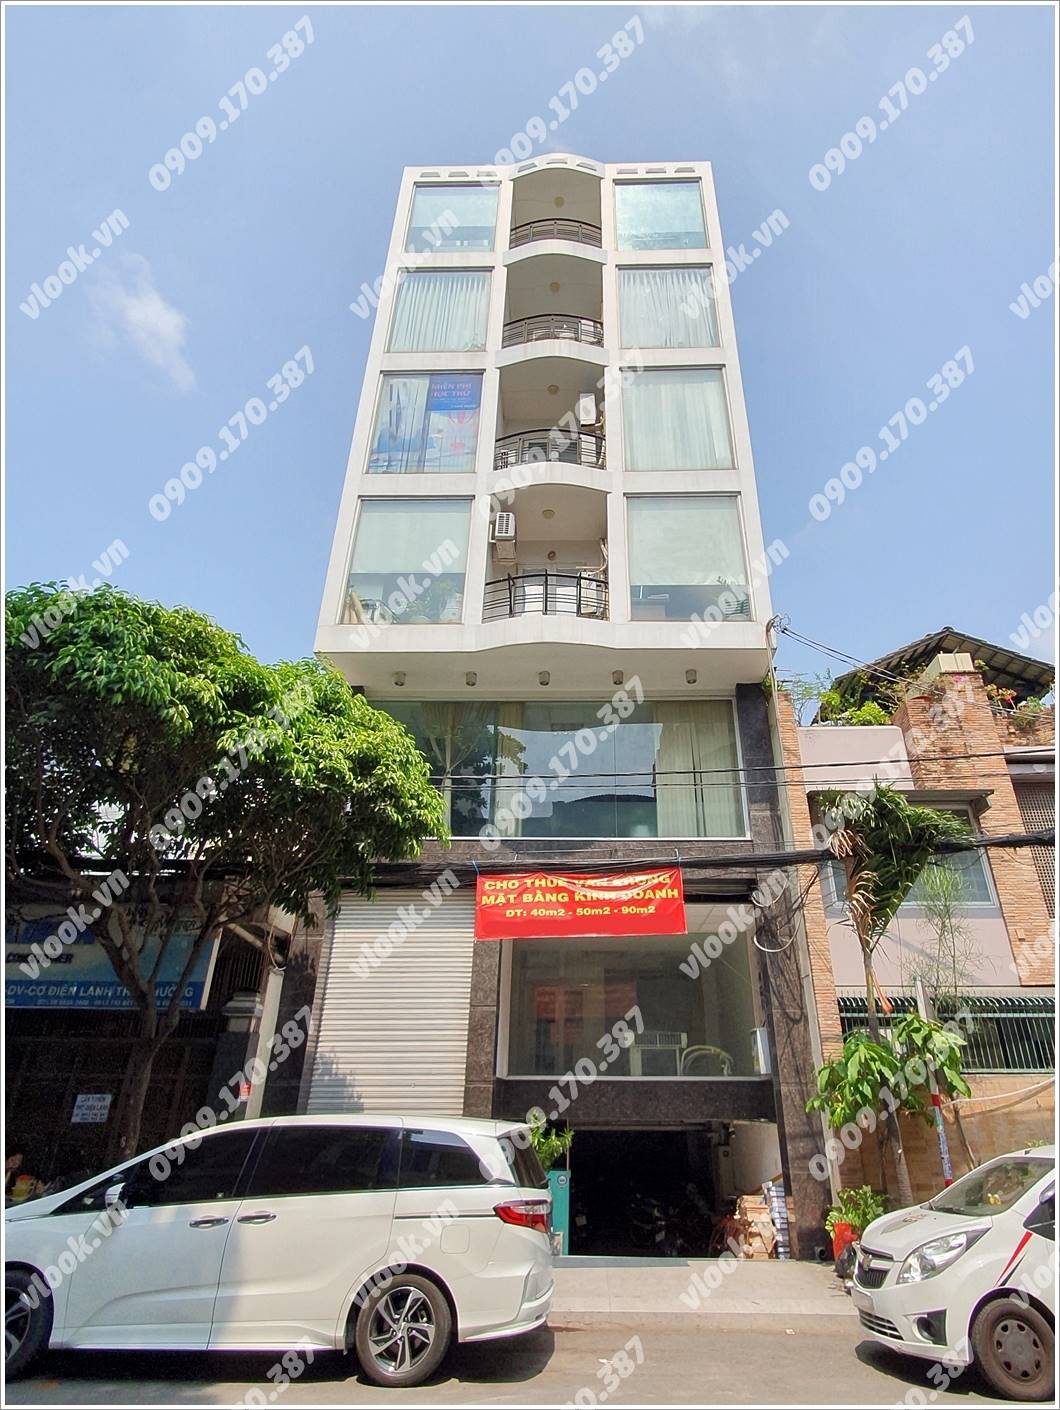 Mặt trước cao ốc cho thuê văn phòng A4 Building, Đường A4, Quận Tân Bình, TPHCM - vlook.vn